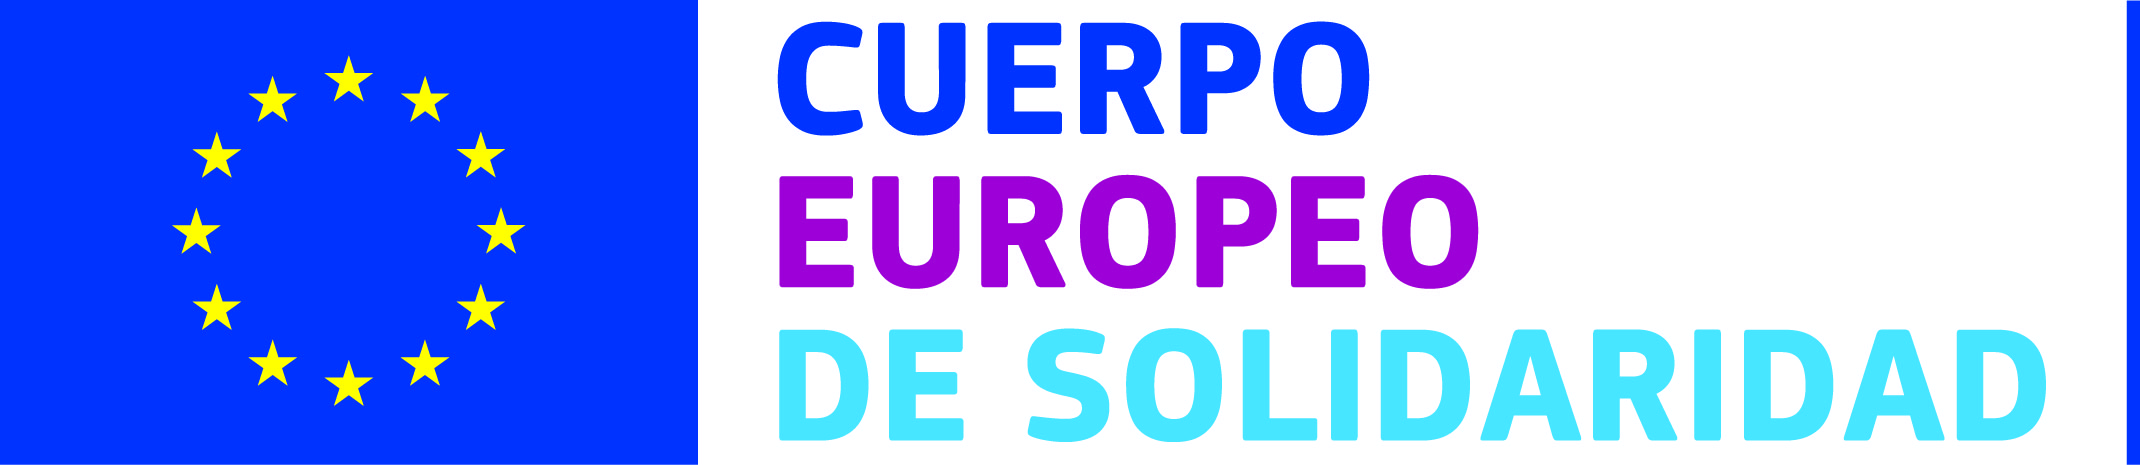 Logo_Cuerpo_Europeo_de_Solidaridad_1.jpg